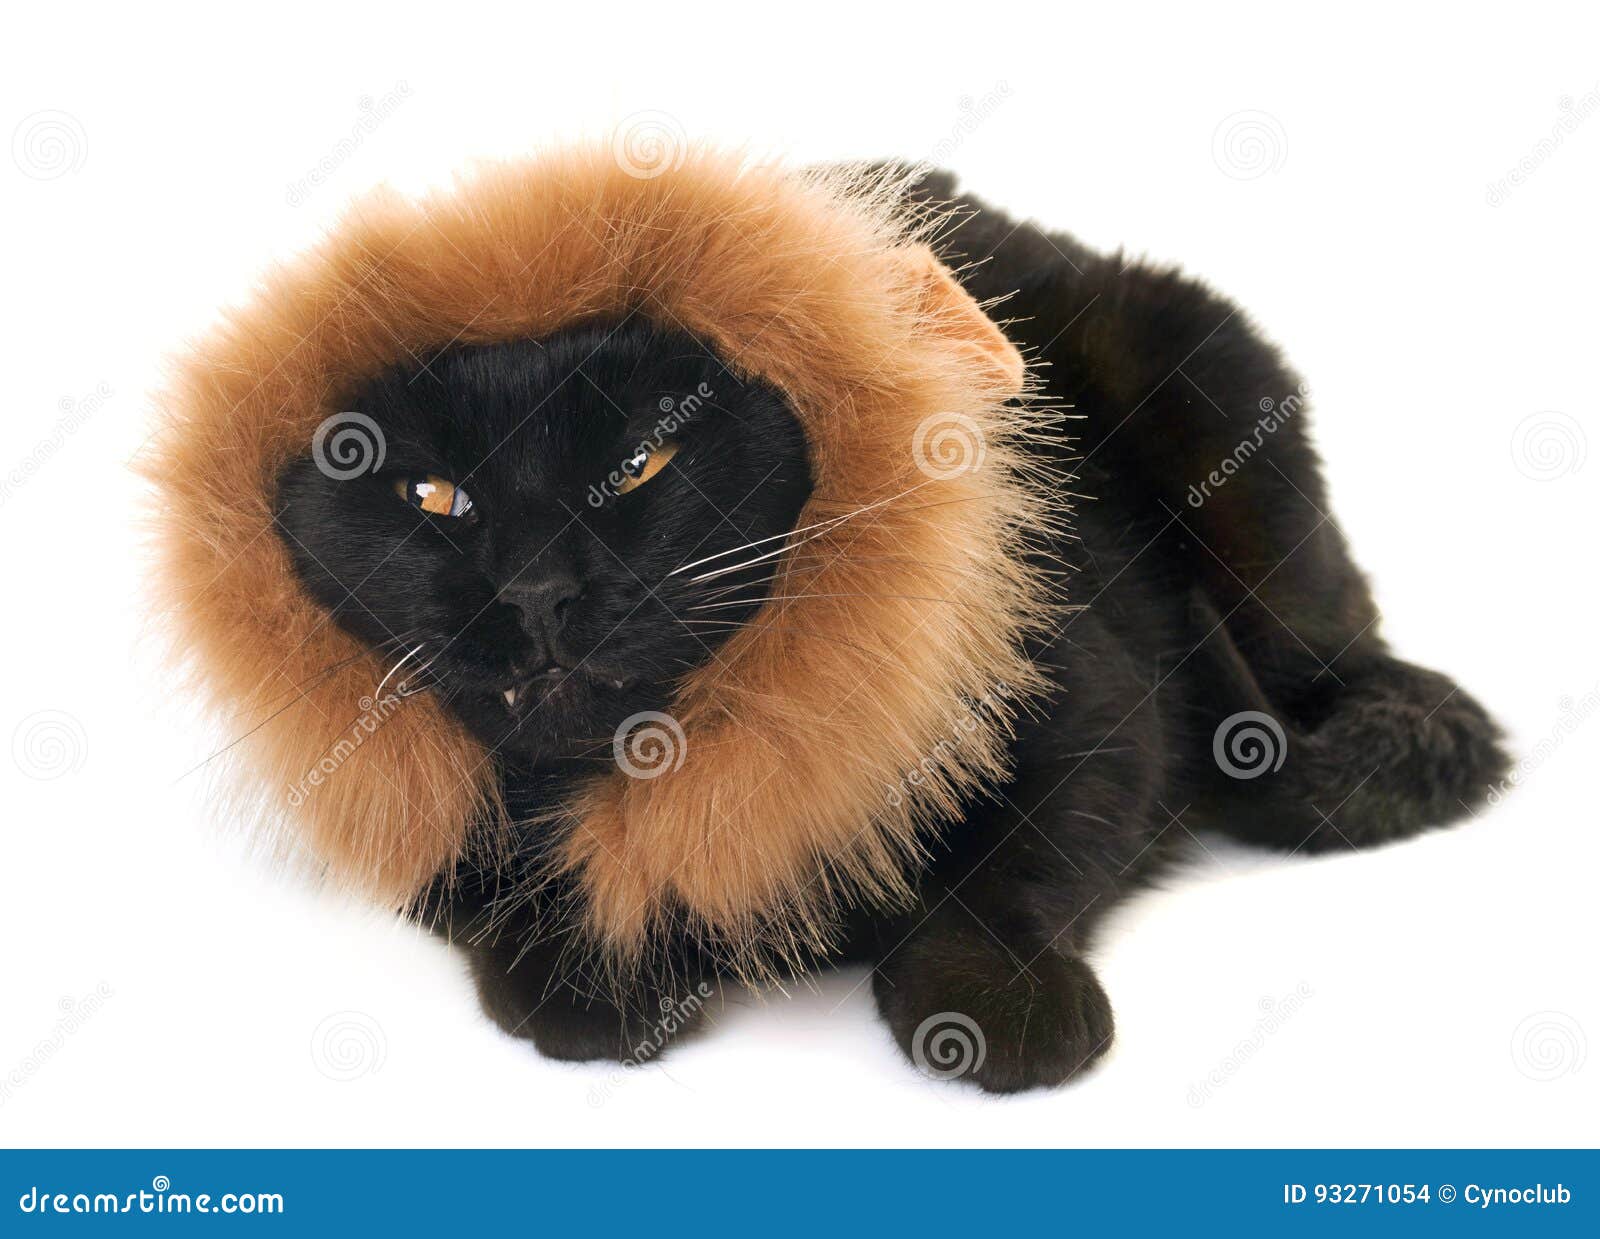 black cat disguised